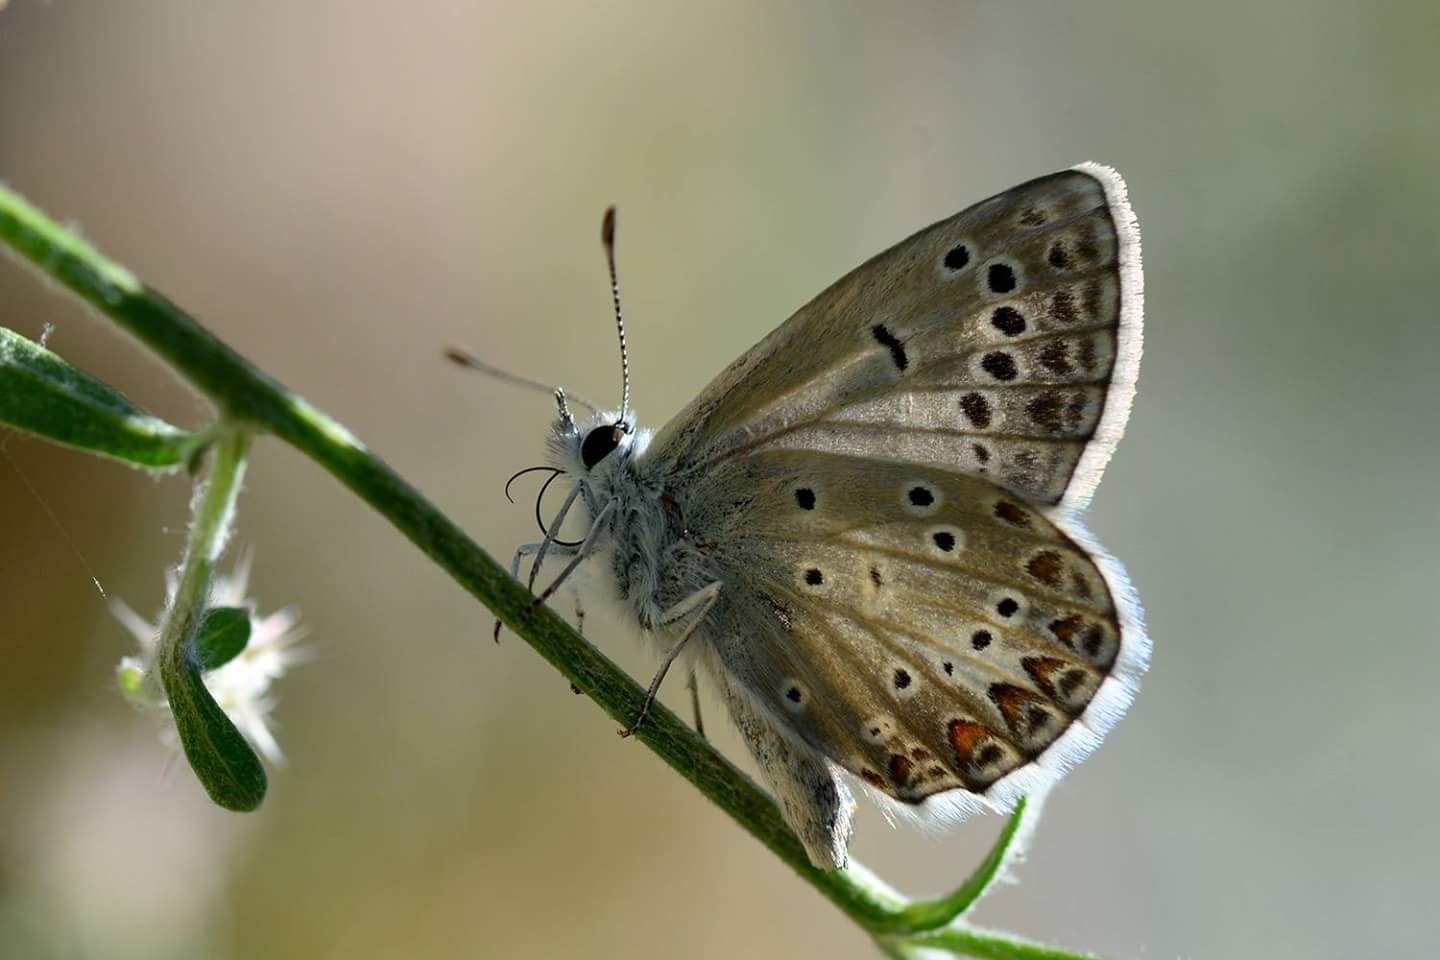 86 kelebek türünün fotoğraflandığı kamp süresince Gümüşhane’ye özgü bir kelebek türü olan ve şu ana kadar çok az kişi tarafından fotoğraflanan Çokgözlü Torul Mavisi de (Polyommatus torulensis) bolca görüntülendi.